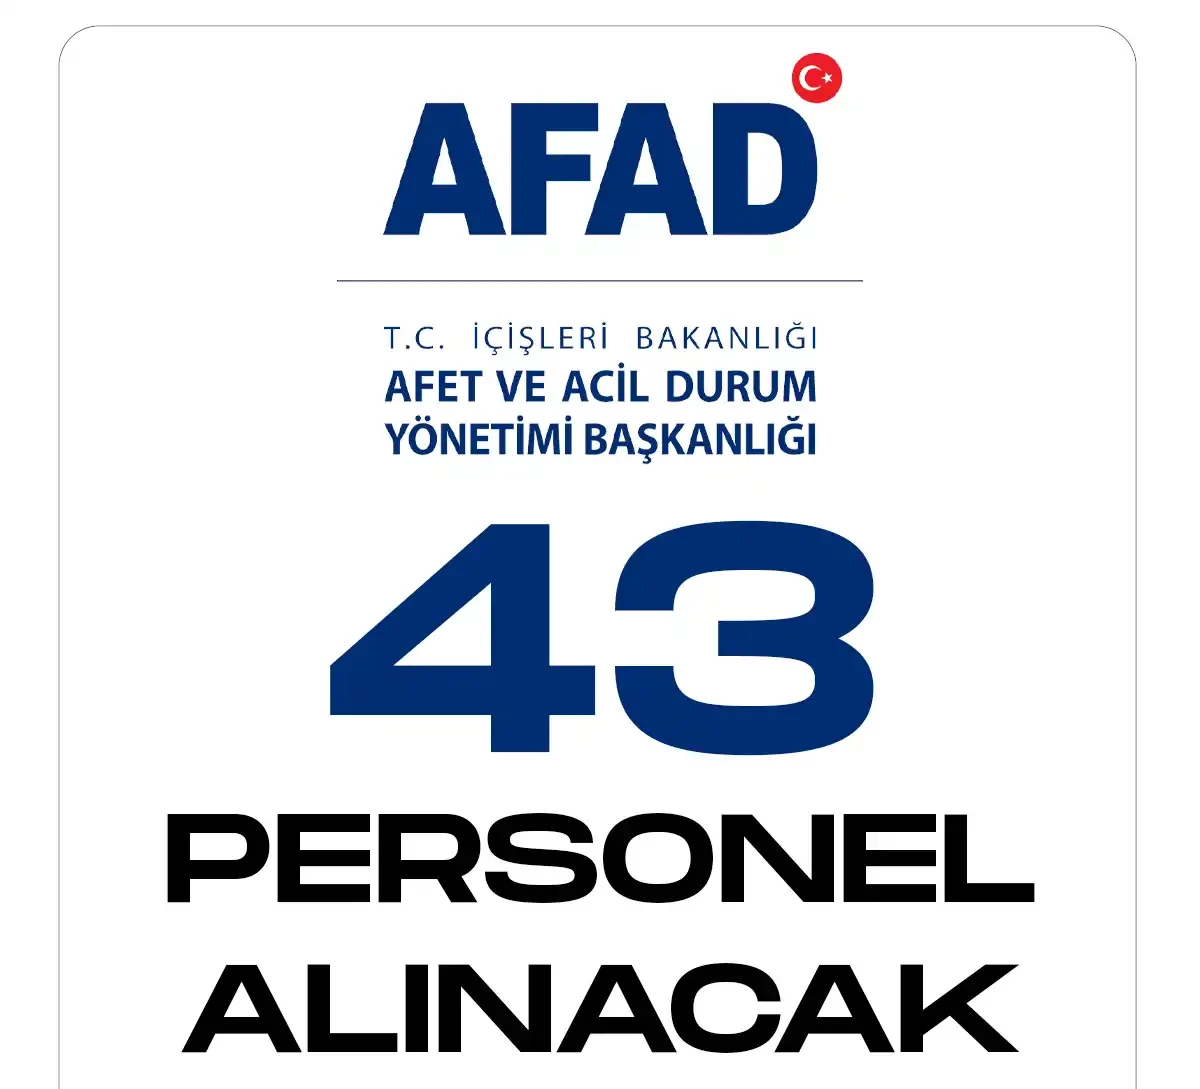 AFAD 43 personel alımı yapacak.